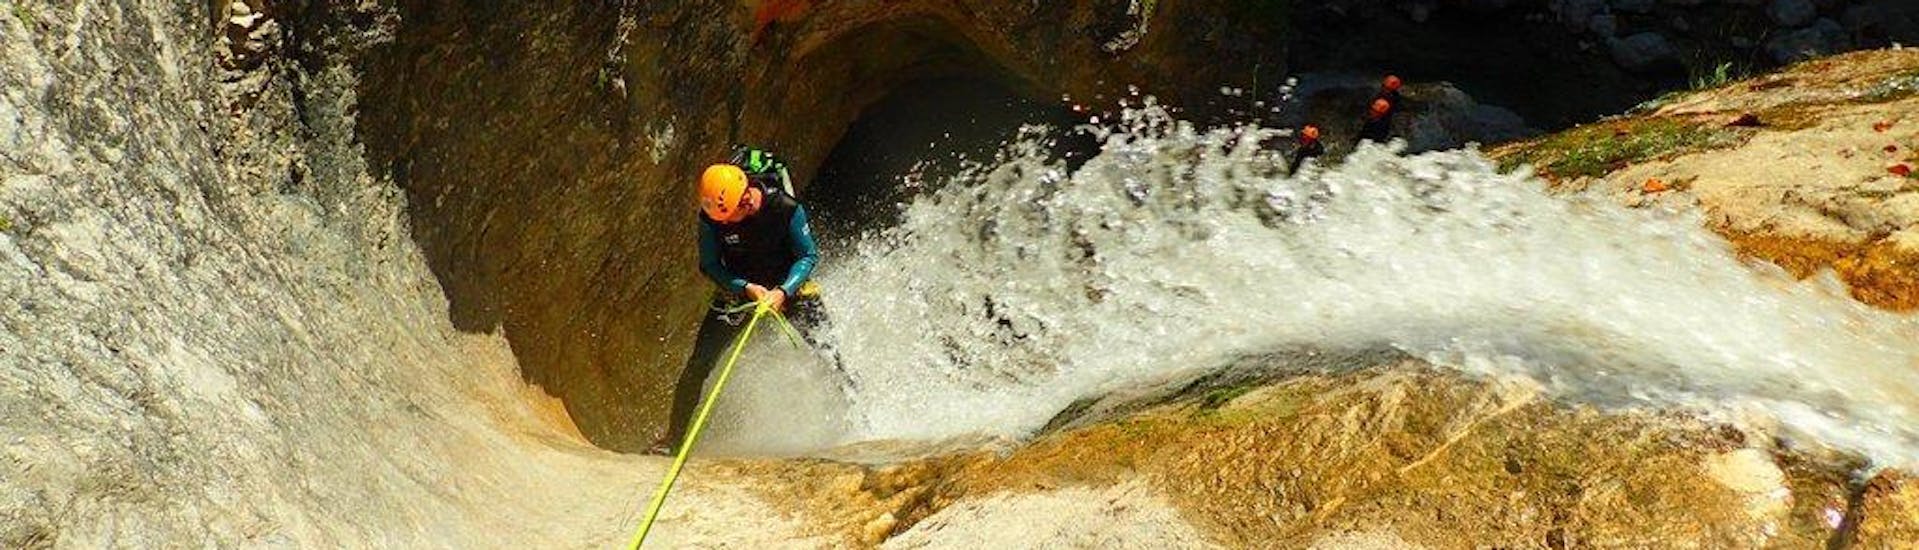 Een man abseilt van een waterval tijdens zijn Canoying "Vertical" Tour in Fischbach met Torrent Outdoor Experience.